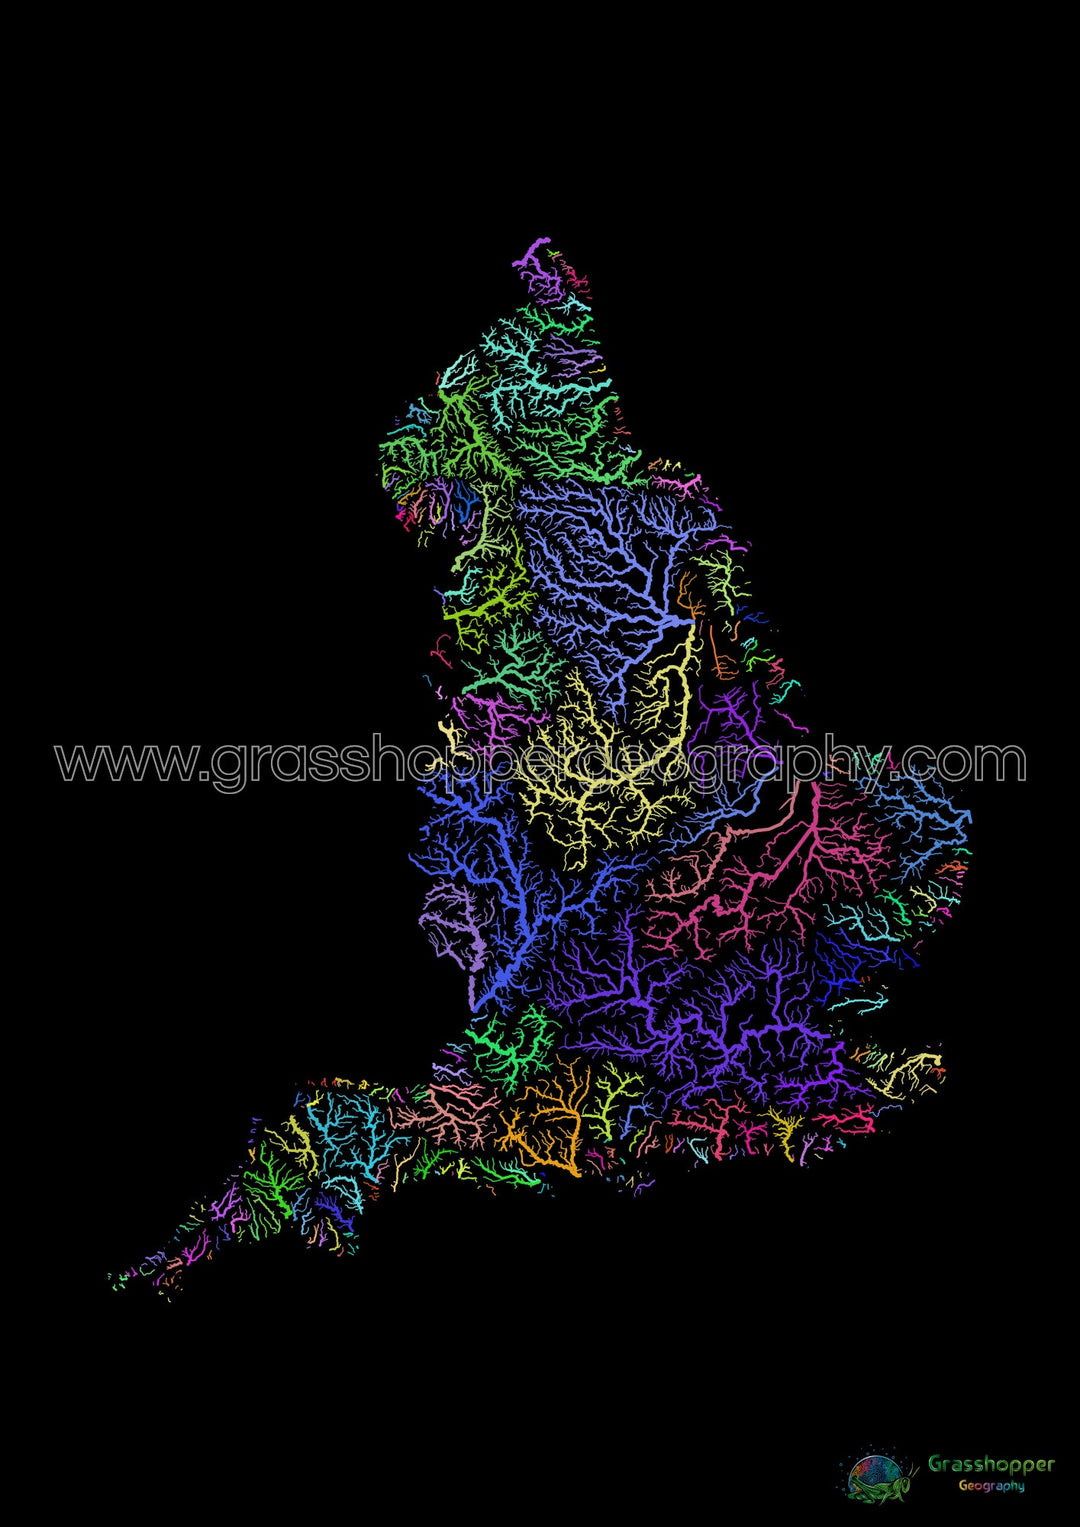 Inglaterra - Mapa de la cuenca fluvial, arco iris sobre negro - Impresión de Bellas Artes